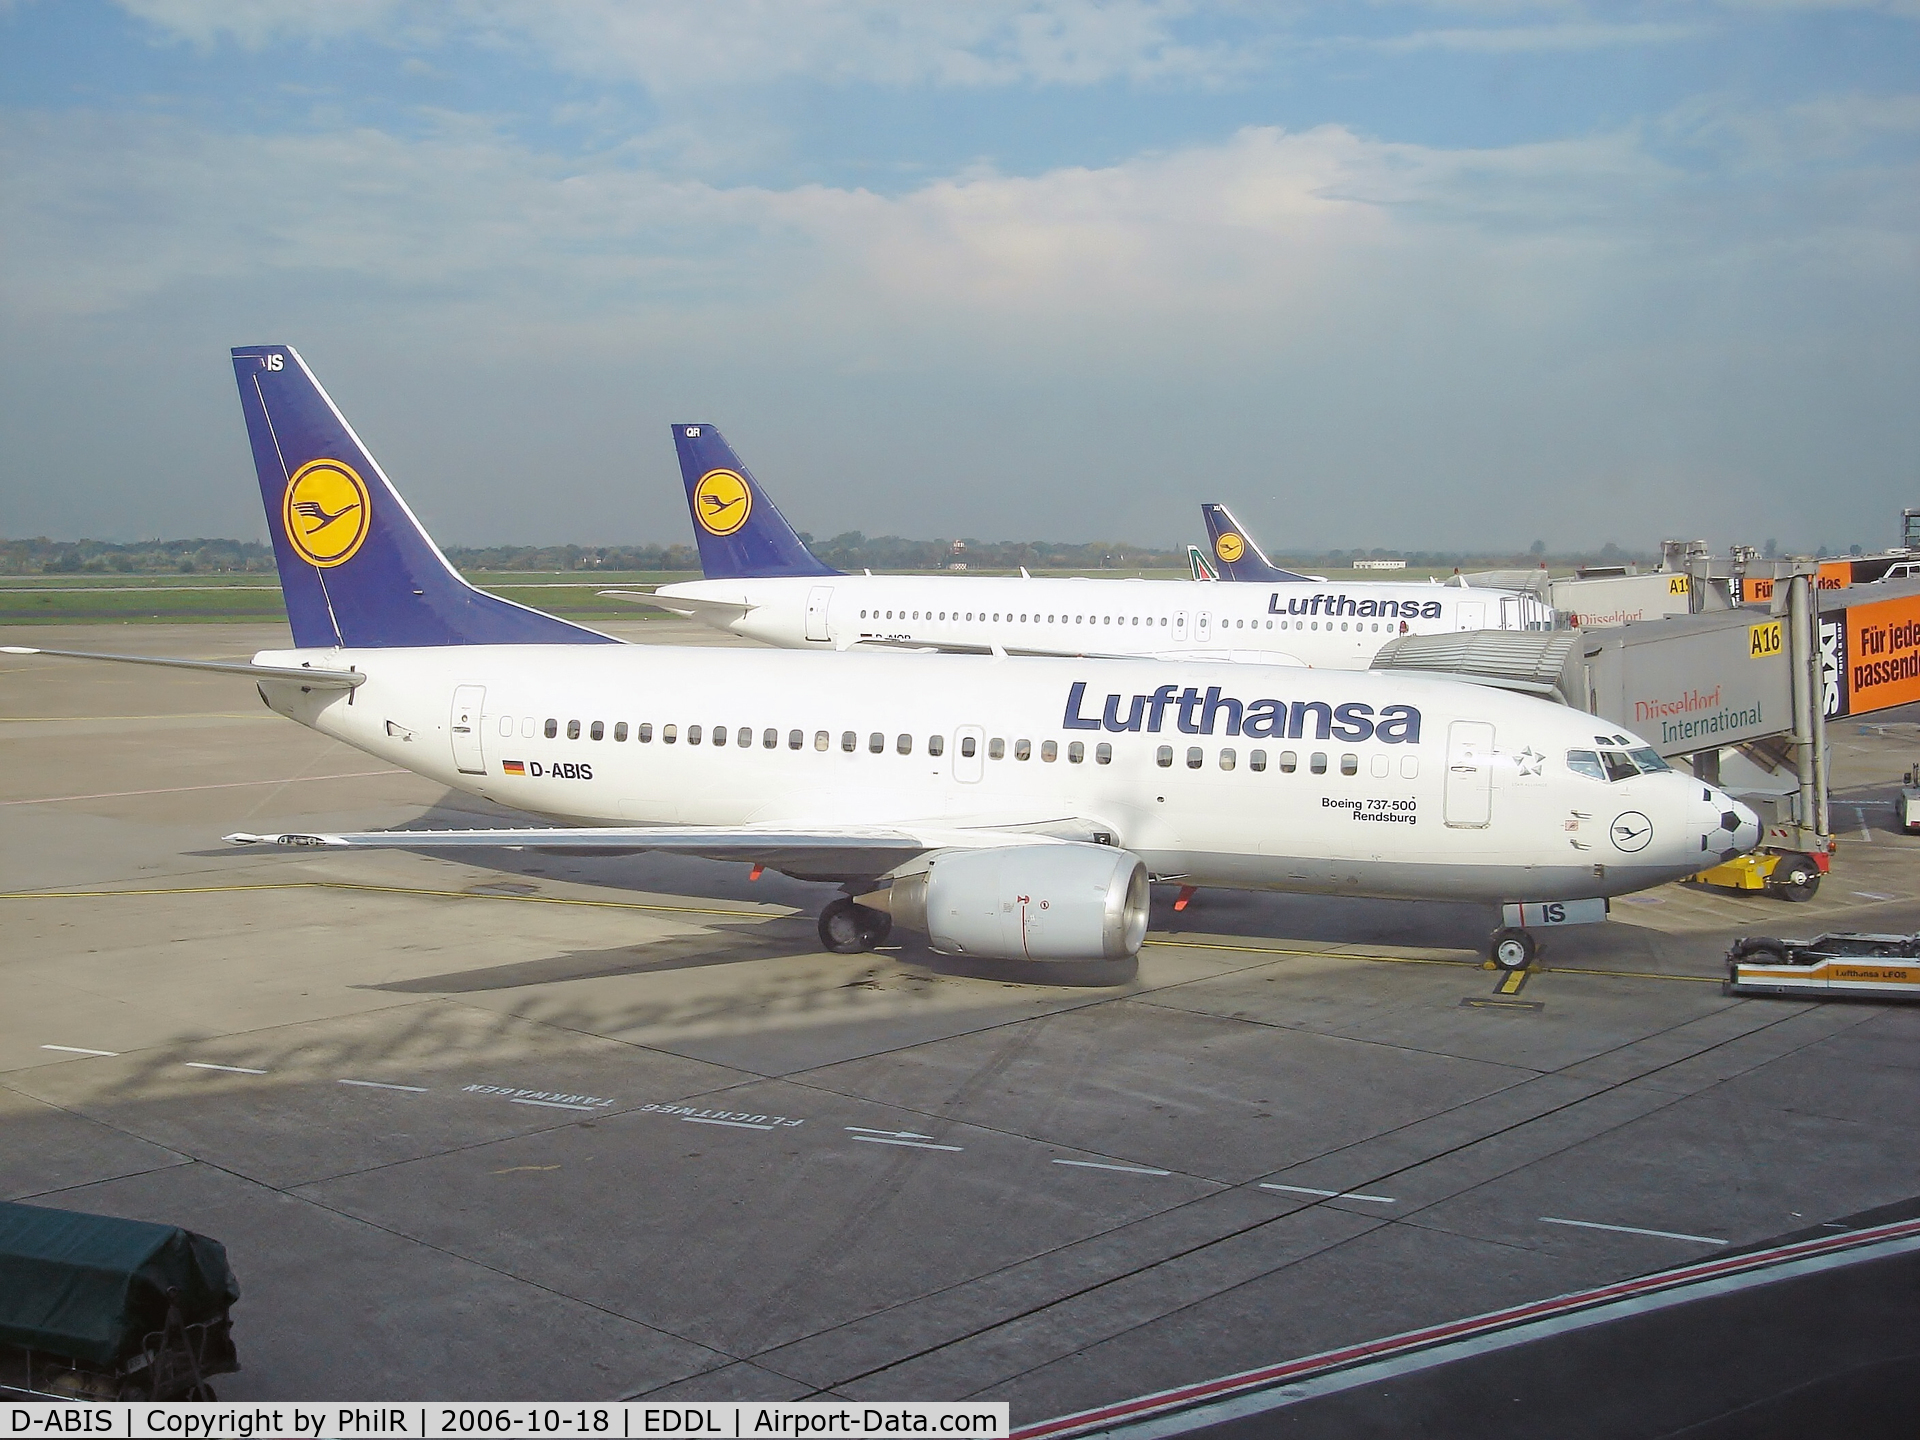 D-ABIS, 1991 Boeing 737-530 C/N 24942, Lufthansa on stand at Dusseldorf